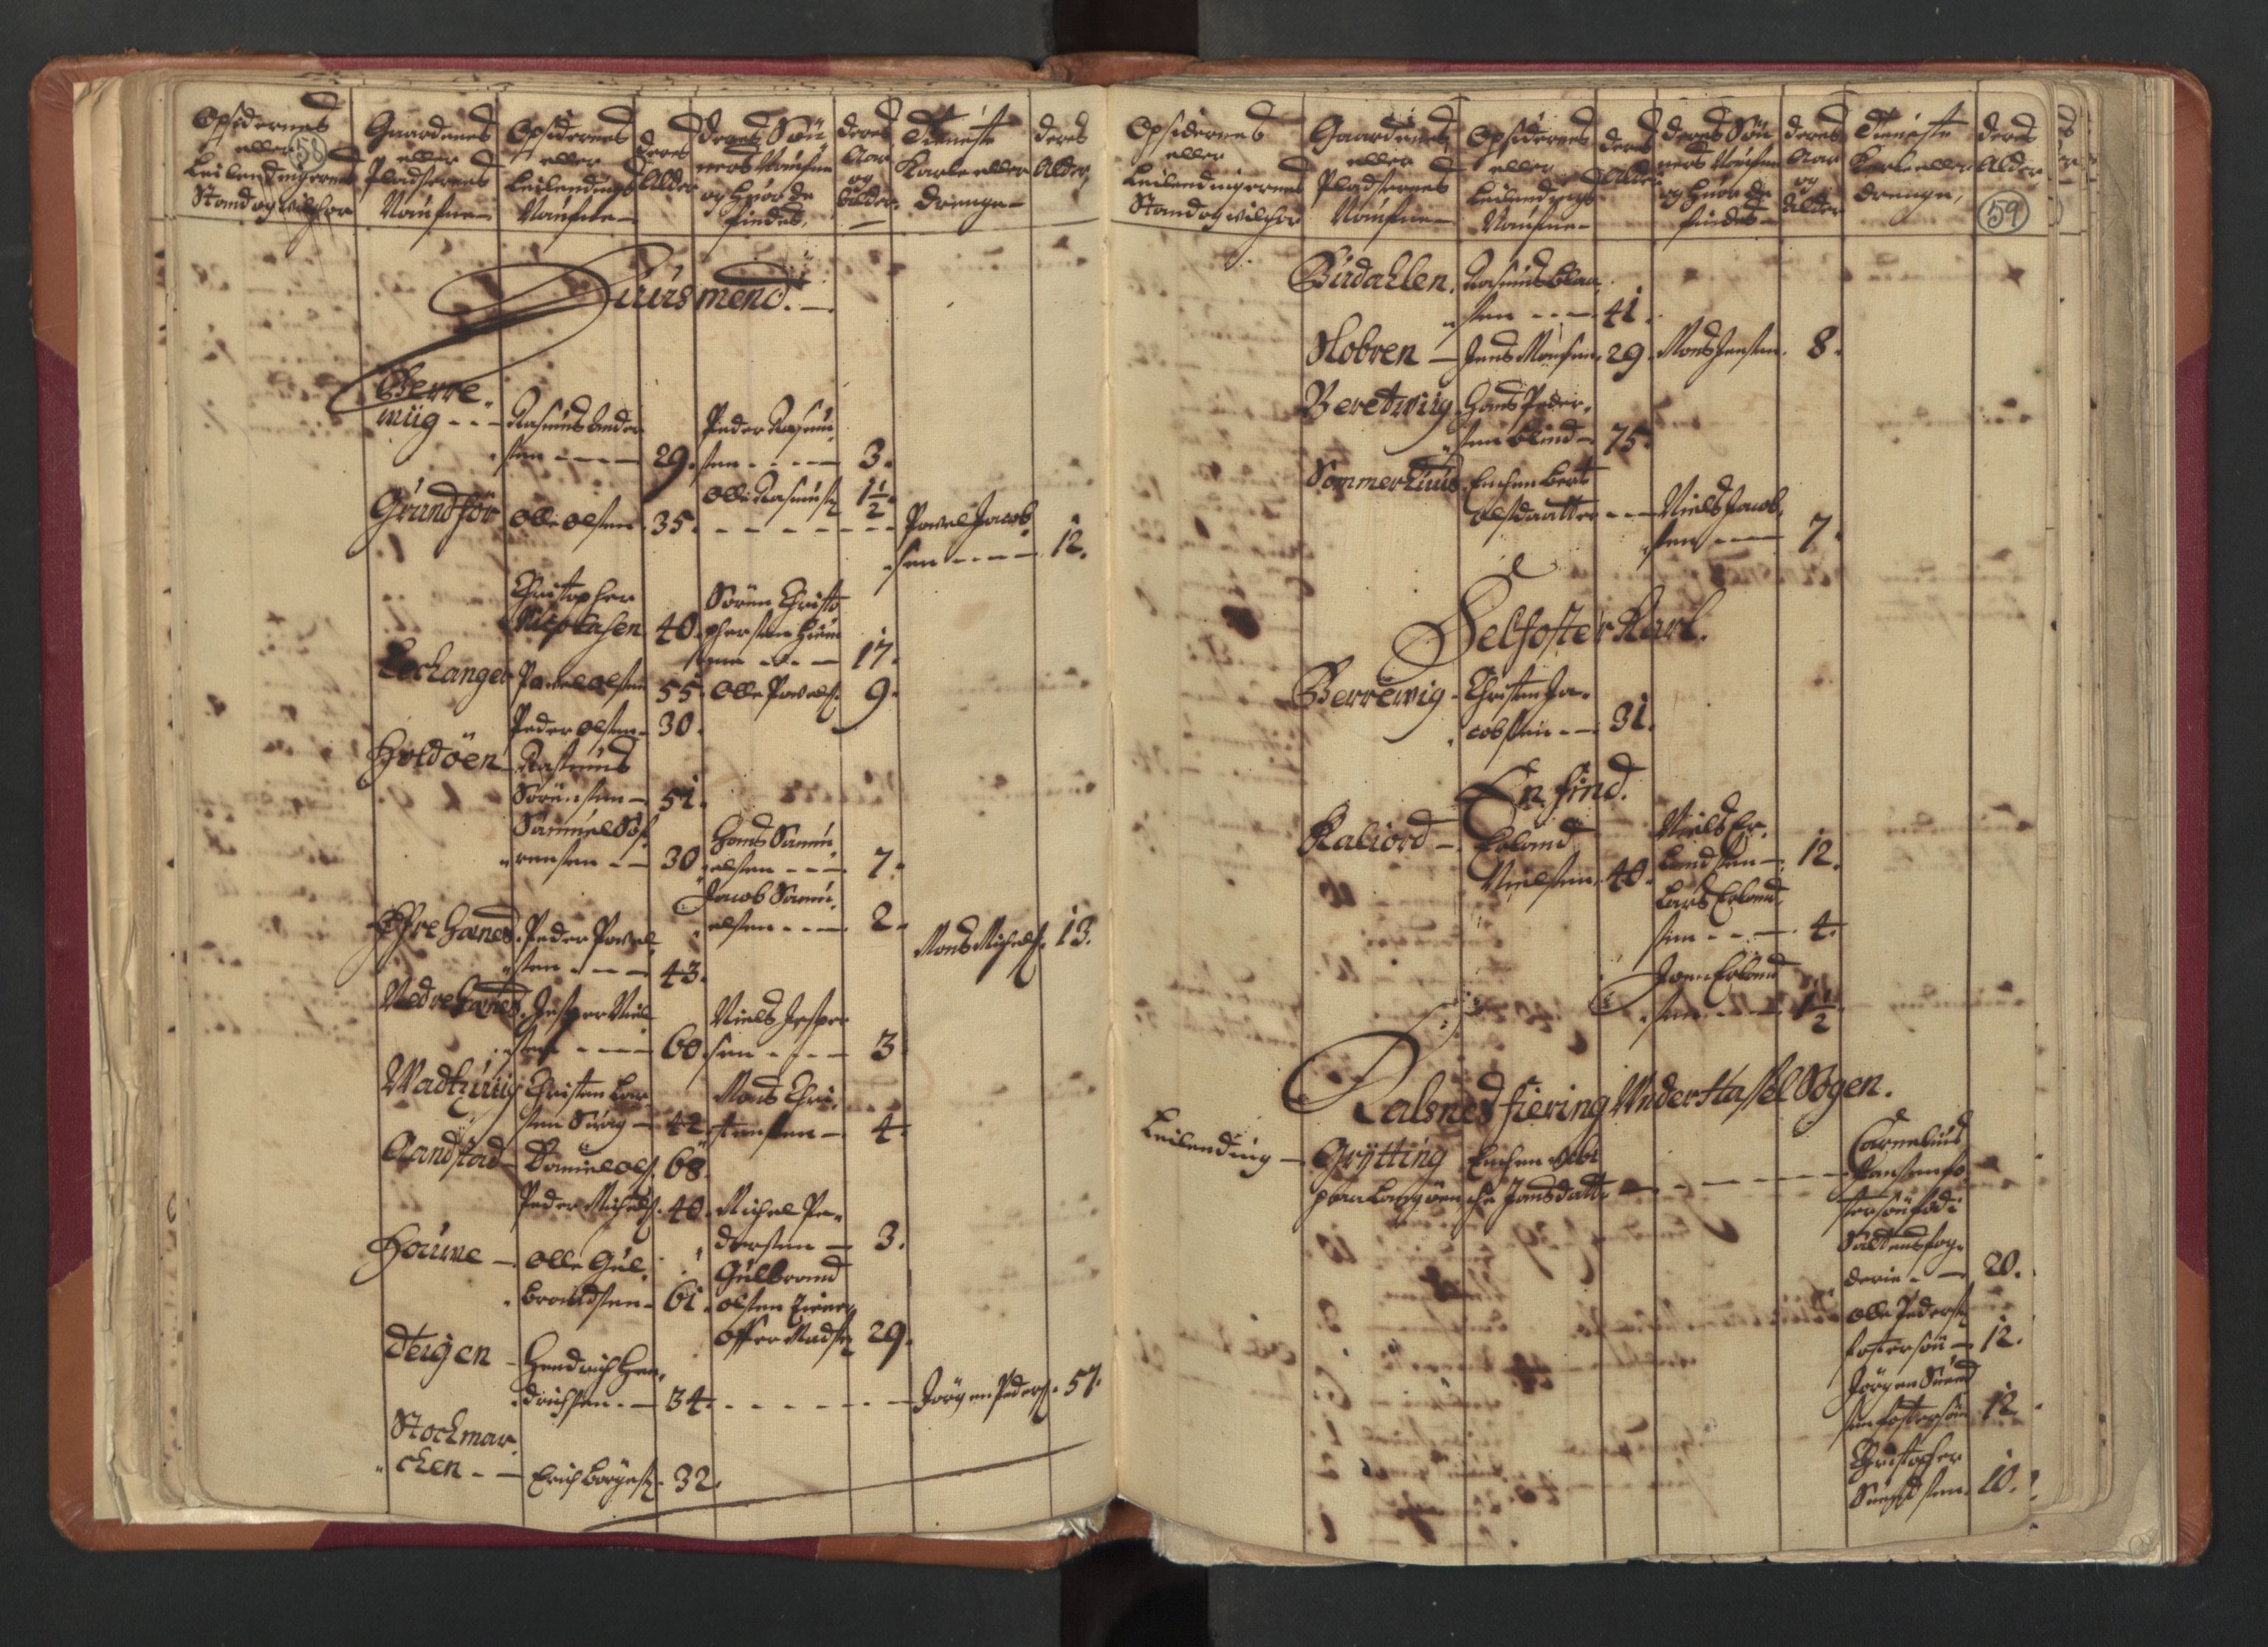 RA, Census (manntall) 1701, no. 18: Vesterålen, Andenes and Lofoten fogderi, 1701, p. 58-59